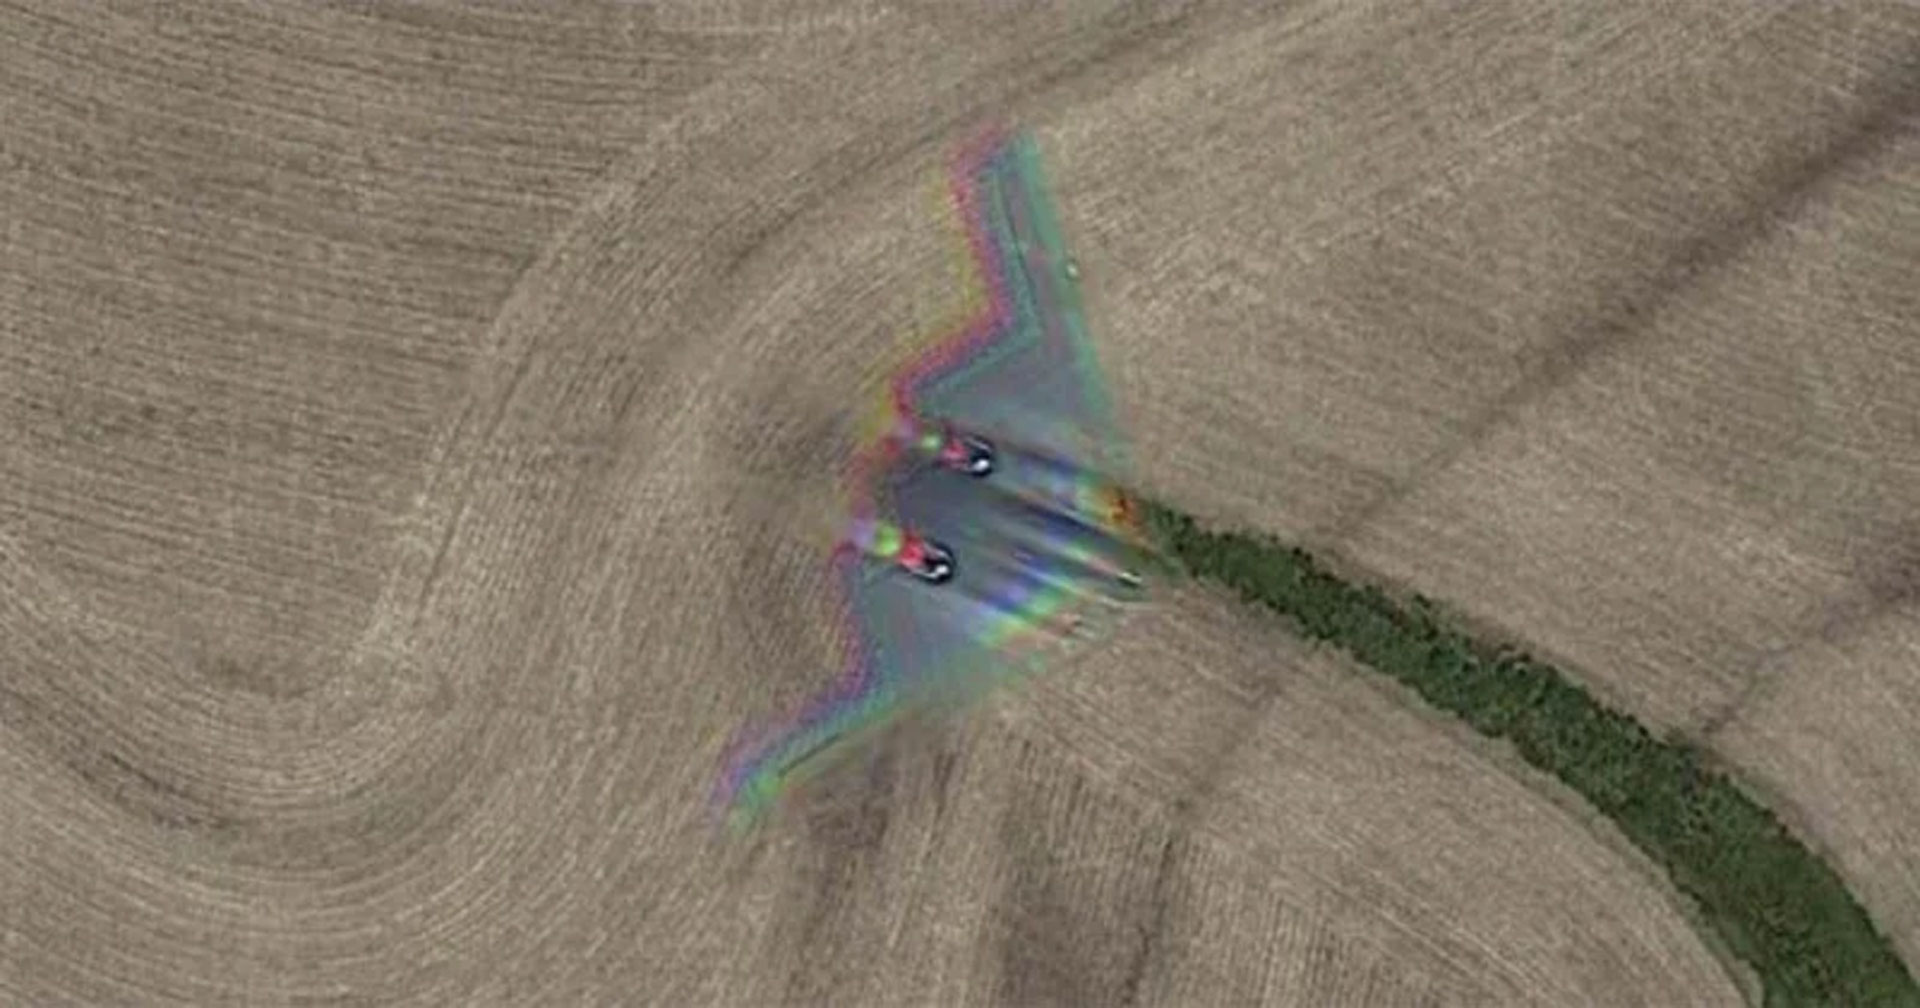 มายังไง!? Google Maps ถ่ายติดเครื่องบินทิ้งระเบิดล่องหน B-2 Spirit Stealth Bomber